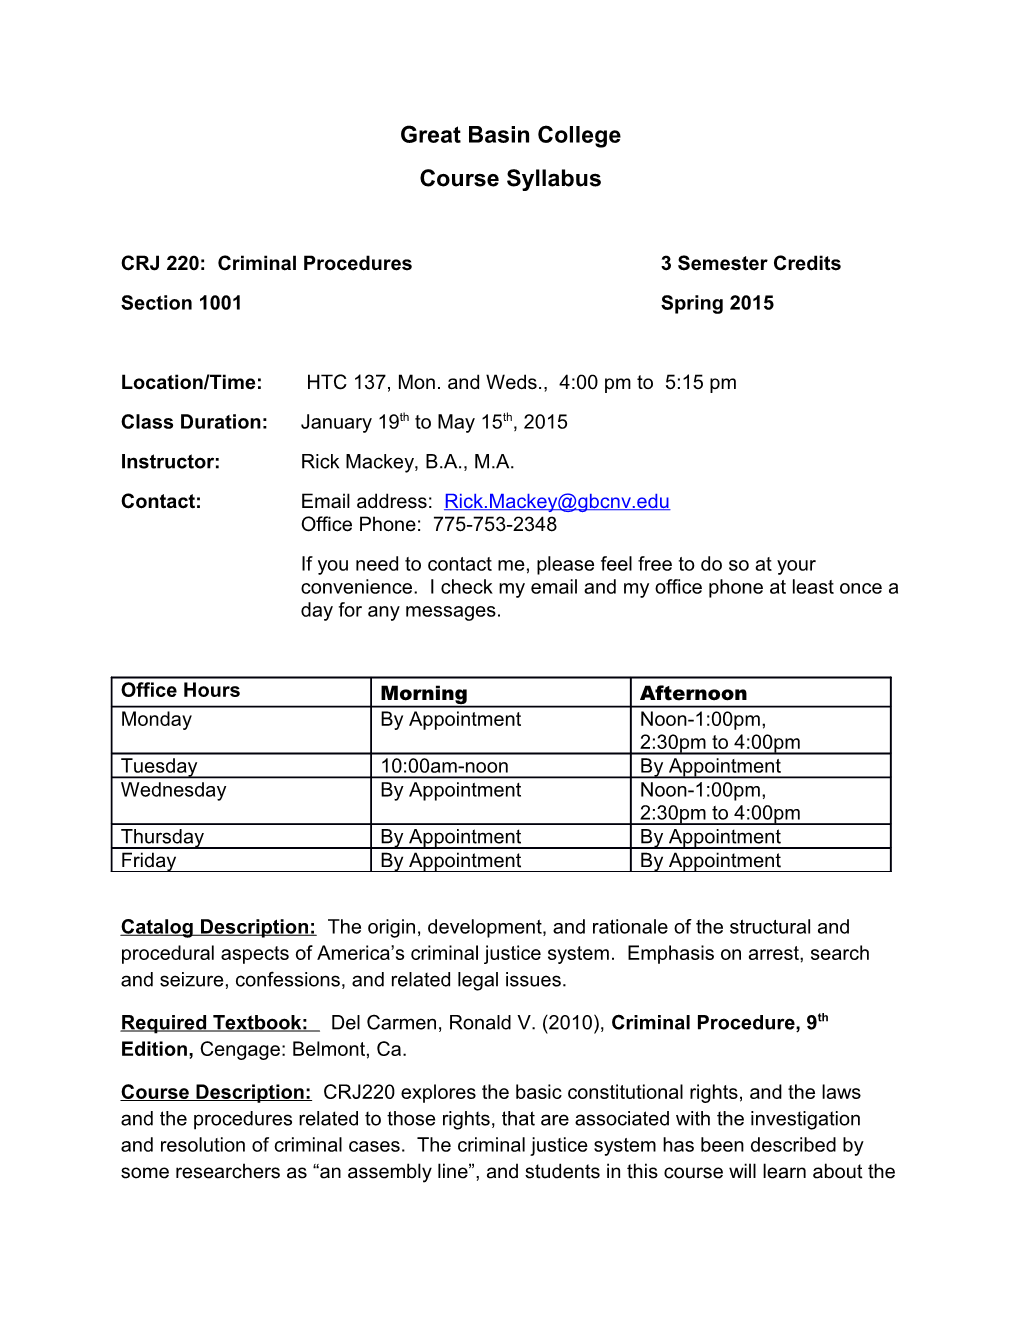 CRJ 220: Criminal Procedures3 Semester Credits